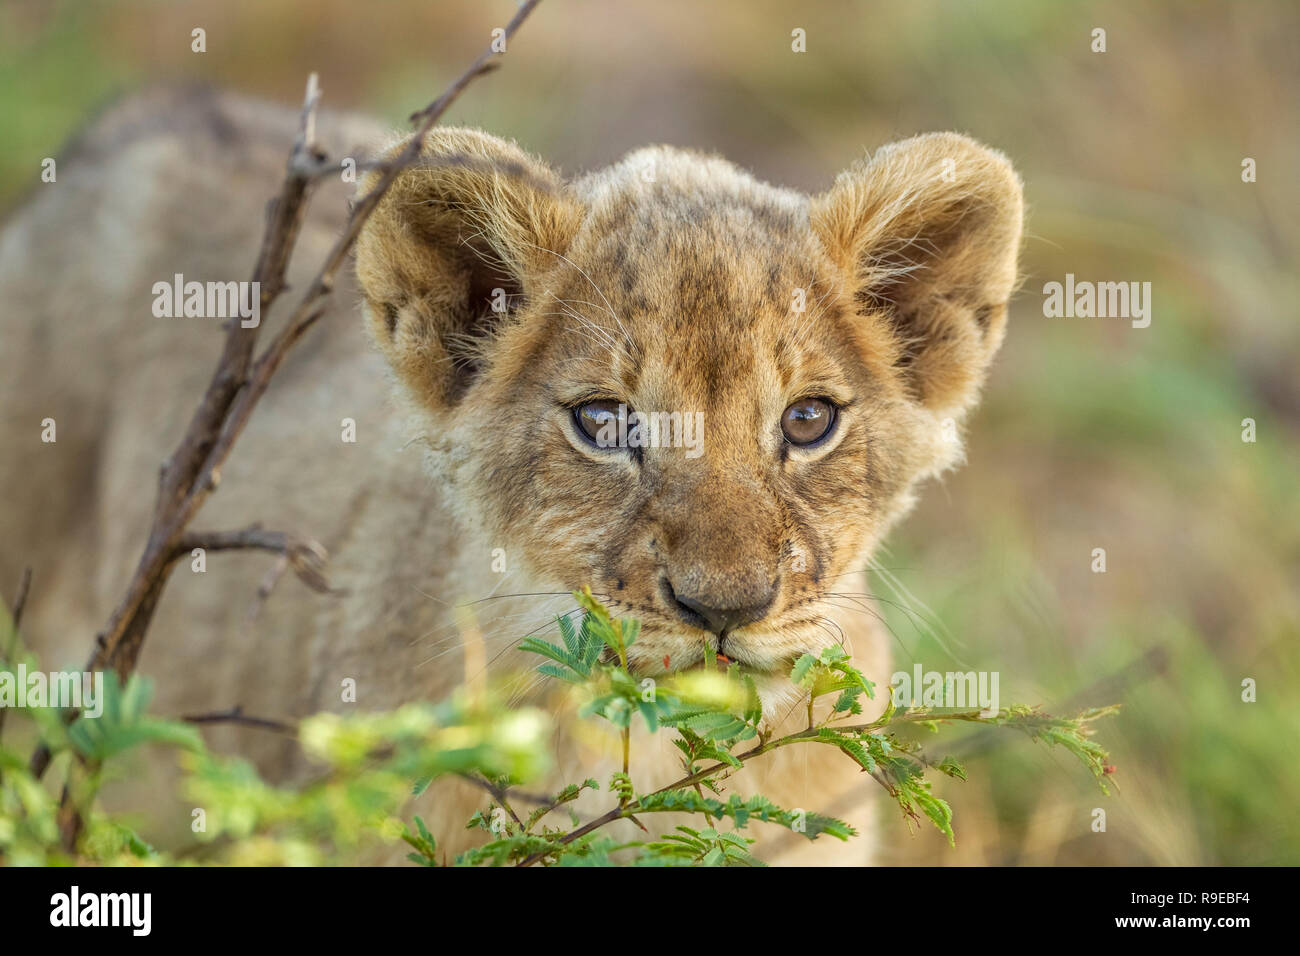 lindo cachorro de león de bebé escondido detrás de un arbusto y mirando curiosamente en la cámara Foto de stock